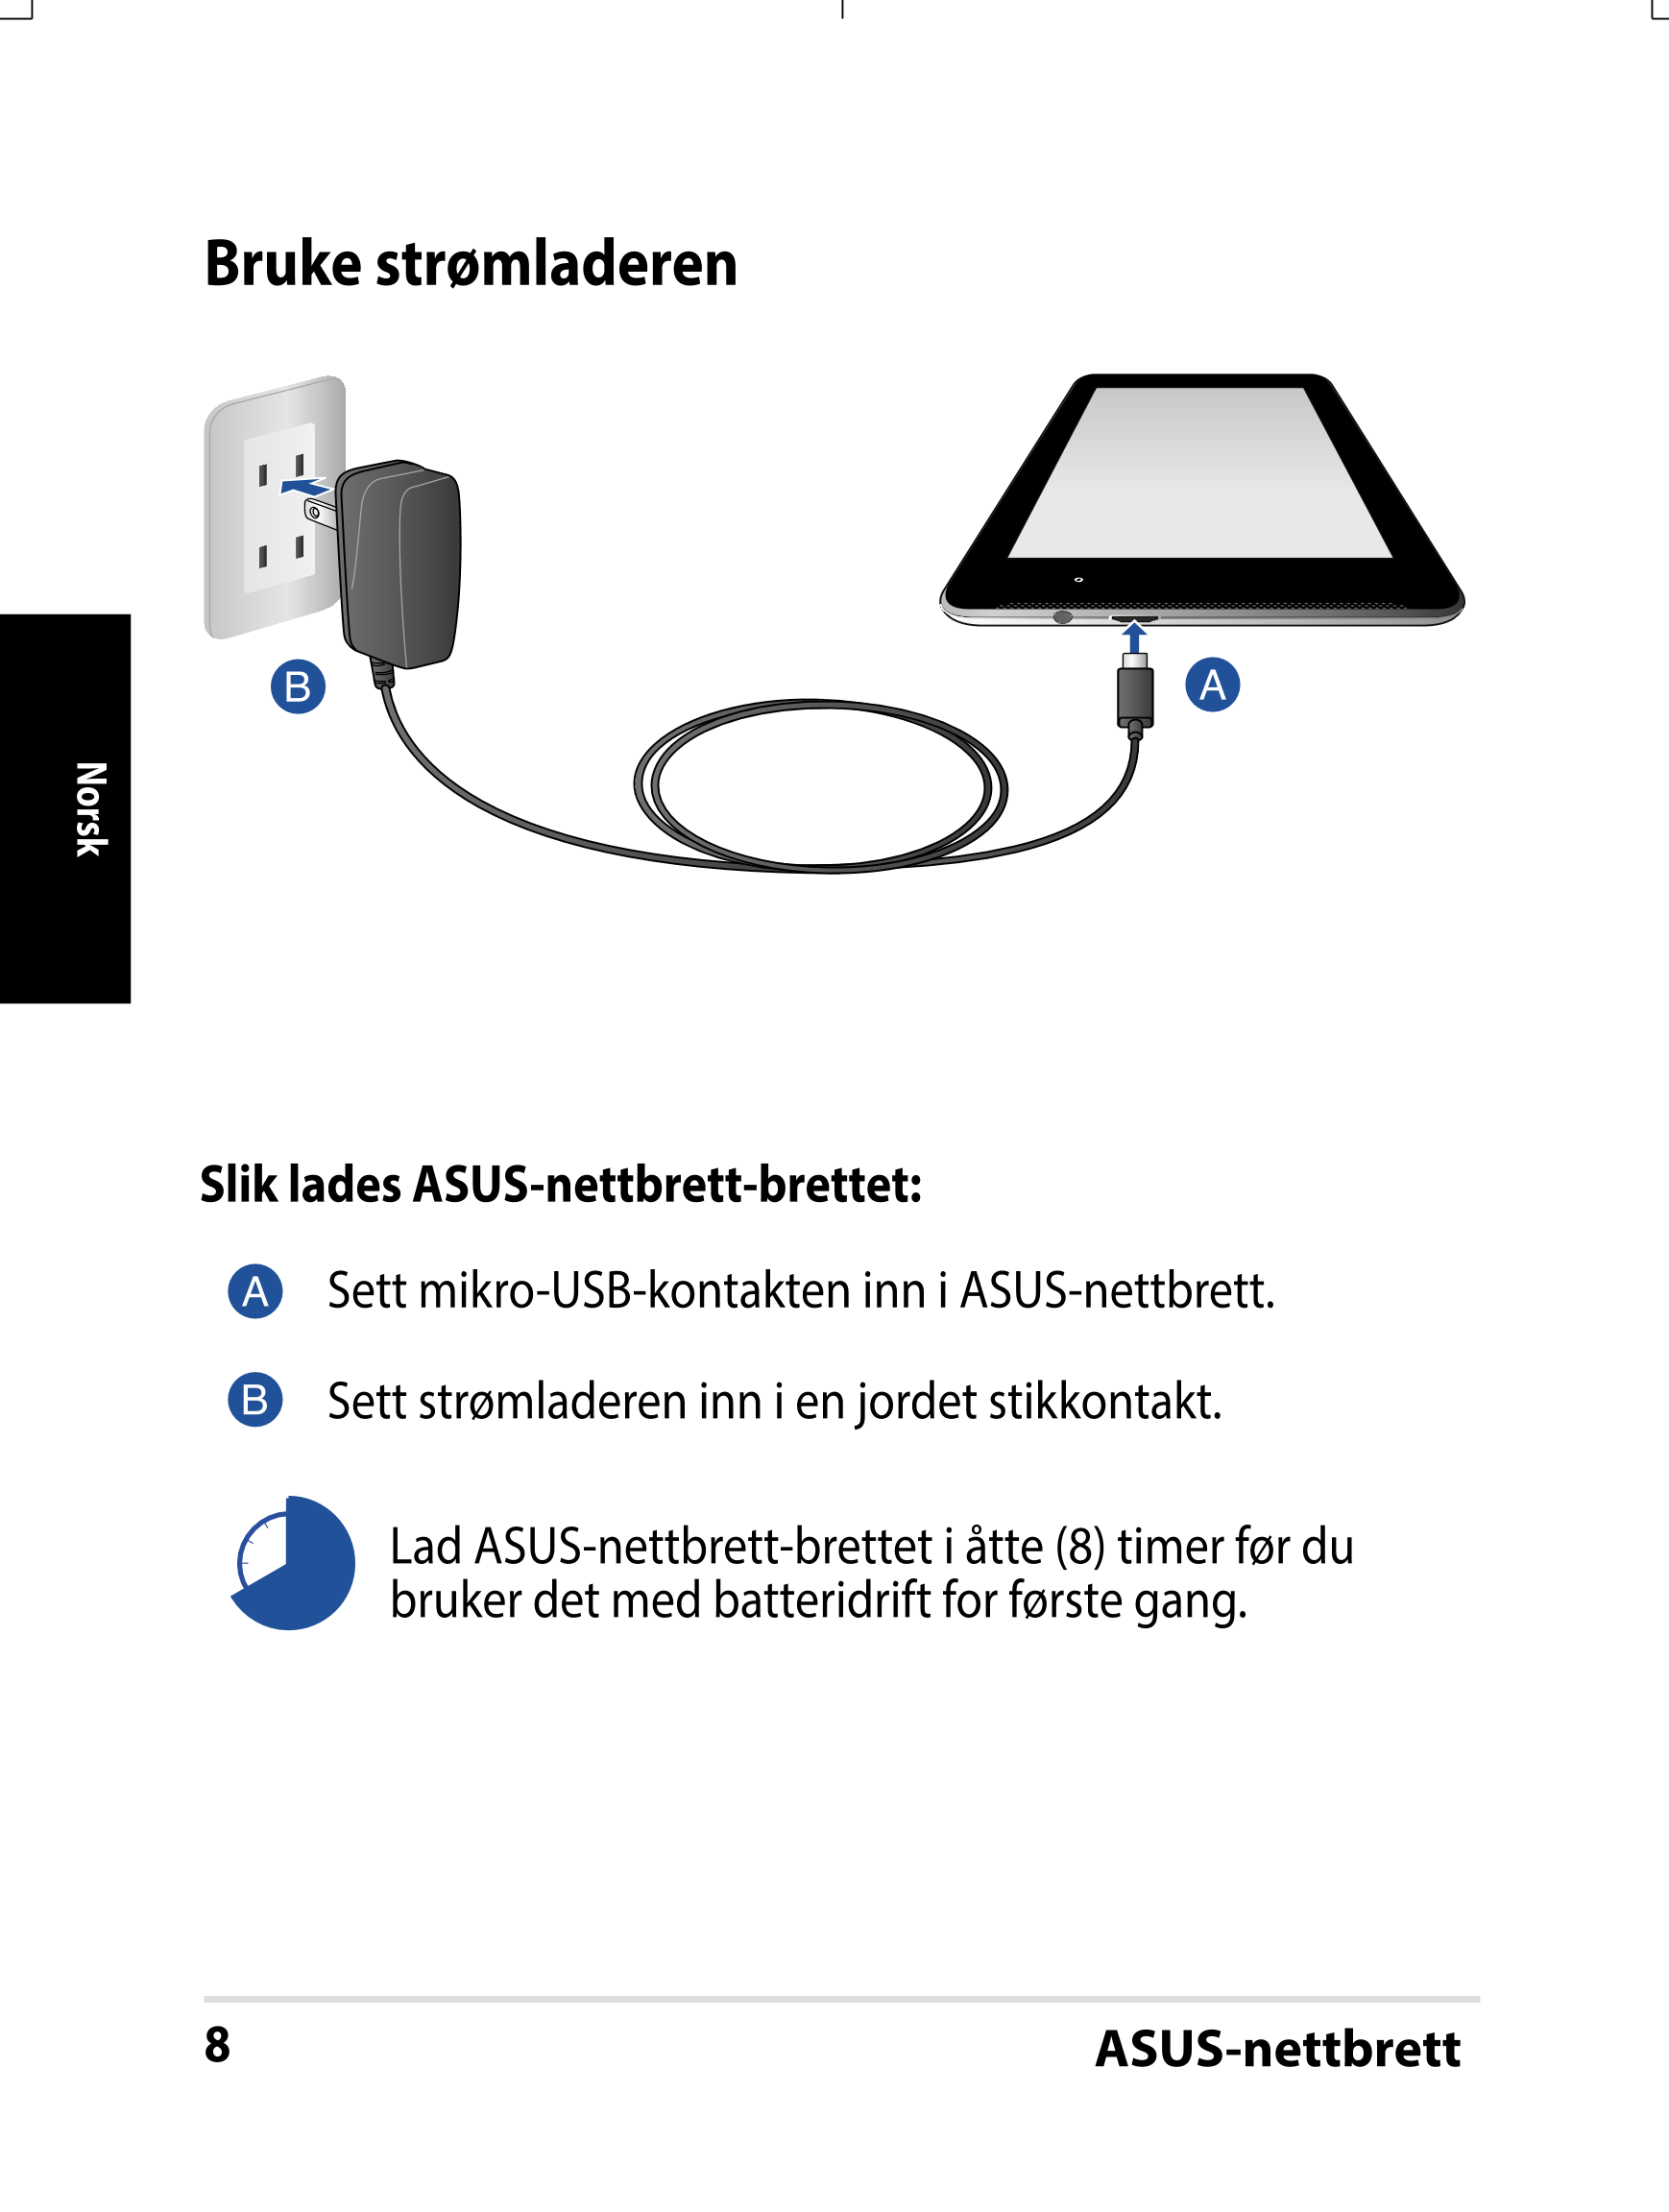 Bruke strømladeren
Norsk
Slik lades ASUS-nettbrett-brettet:
Sett mikro-USB-kontakten inn i ASUS-nettbrett.
Sett strømladeren inn